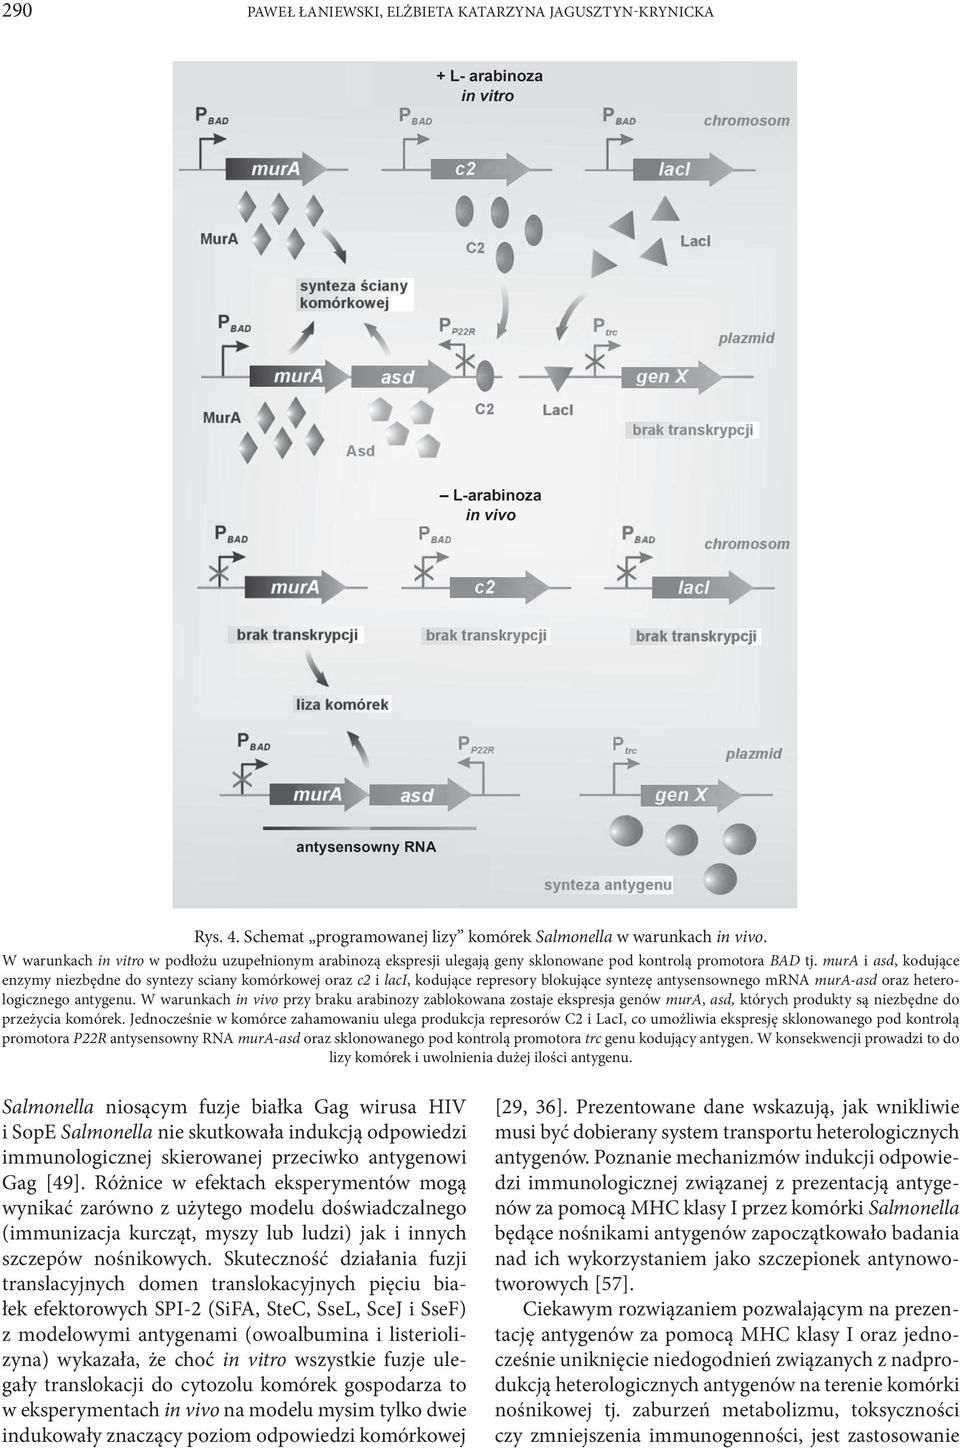 mura i asd, kodujące enzymy niezbędne do syntezy sciany komórkowej oraz c2 i laci, kodujące represory blokujące syntezę antysensownego mrna mura-asd oraz heterologicznego antygenu.